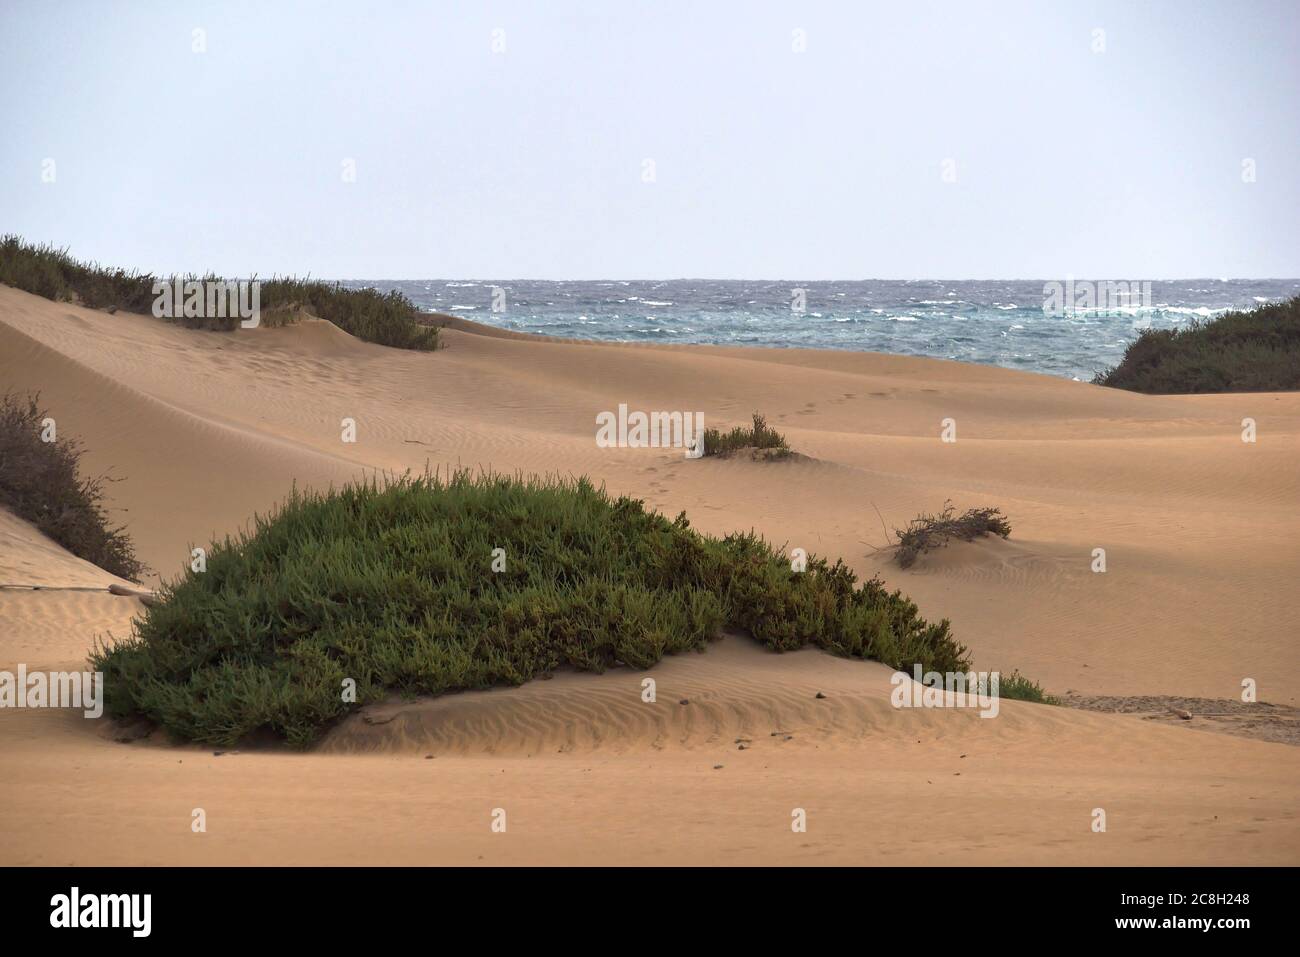 Dunas de Maspalomas - Grande Canarie - Espagne - a la tempête - petite dune avec plantes - empreintes de pieds dans le sable - Mer grise Banque D'Images